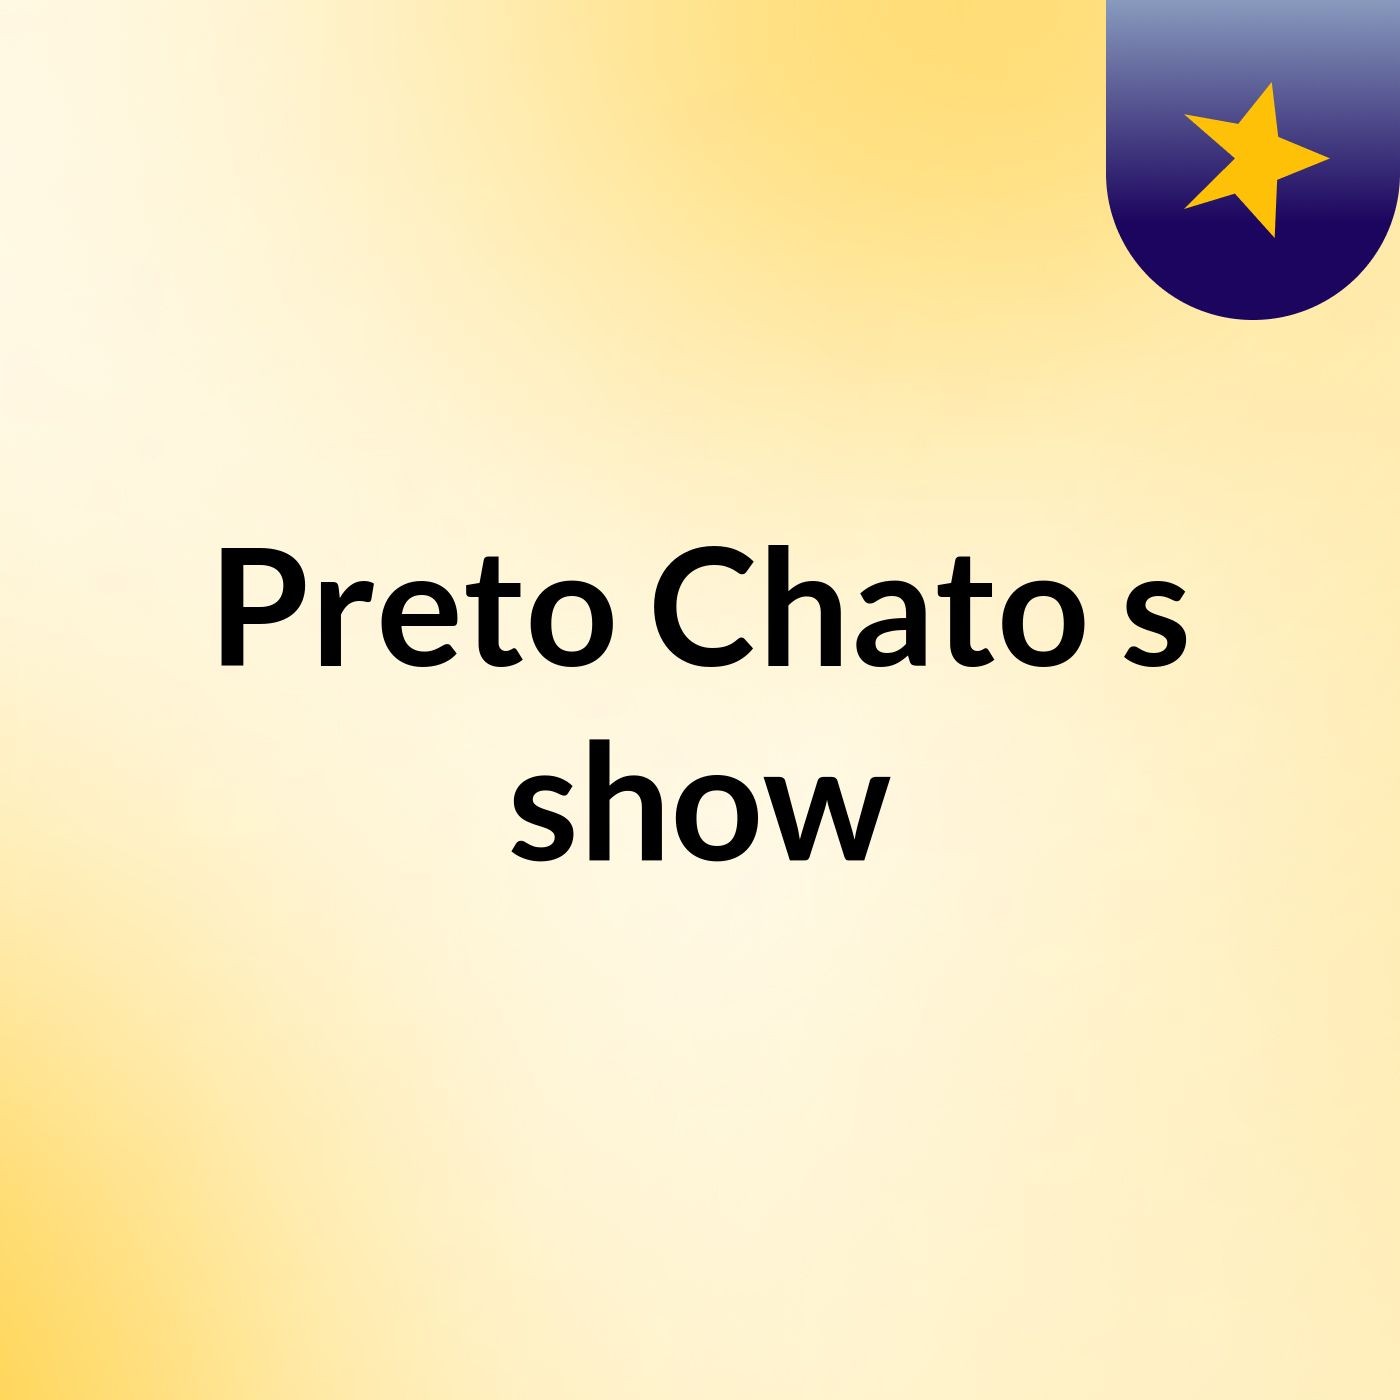 Preto Chato's show